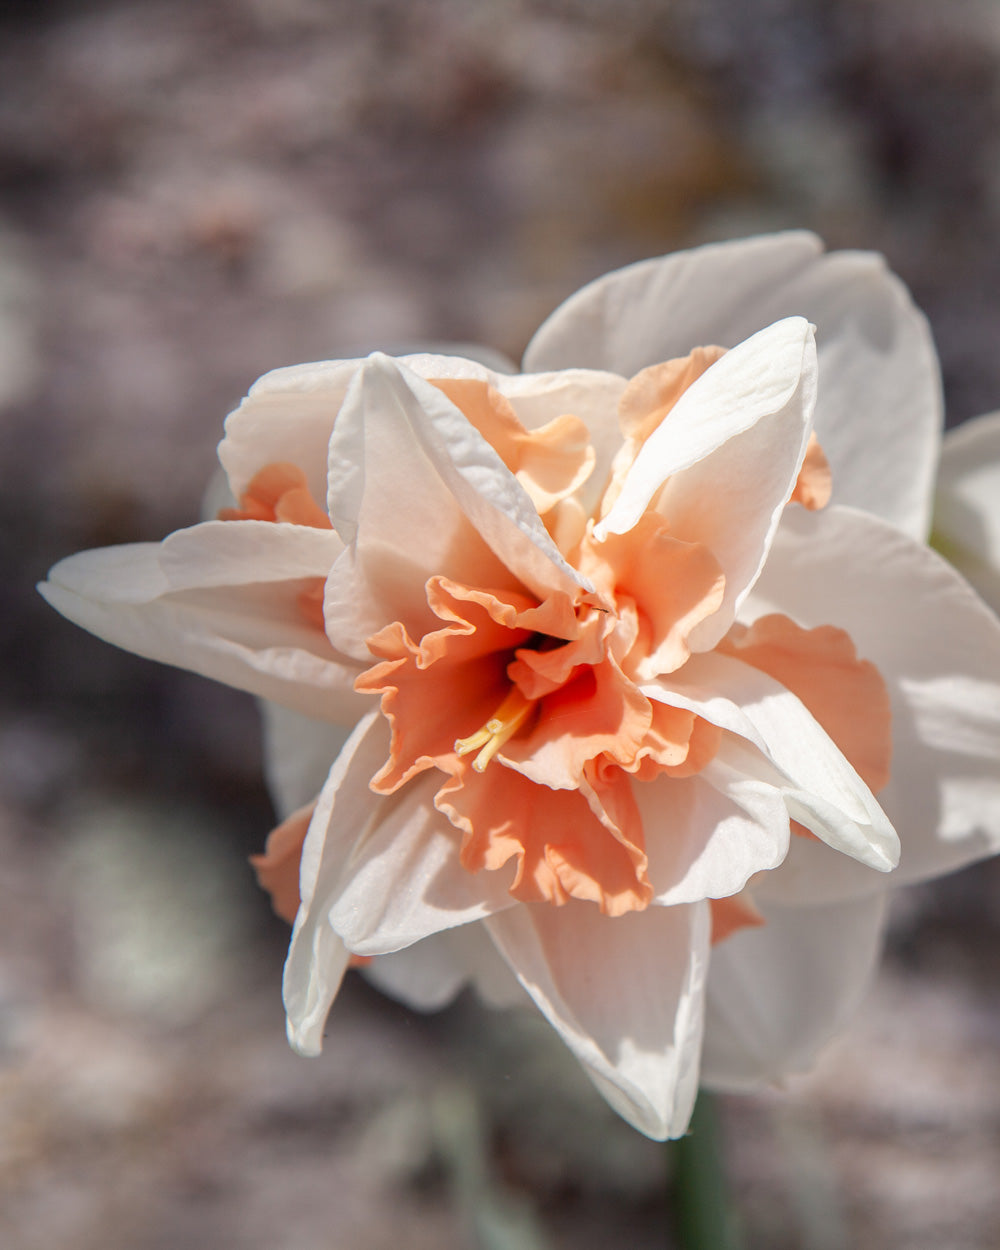 Delnashaugh Daffodil Bulbs